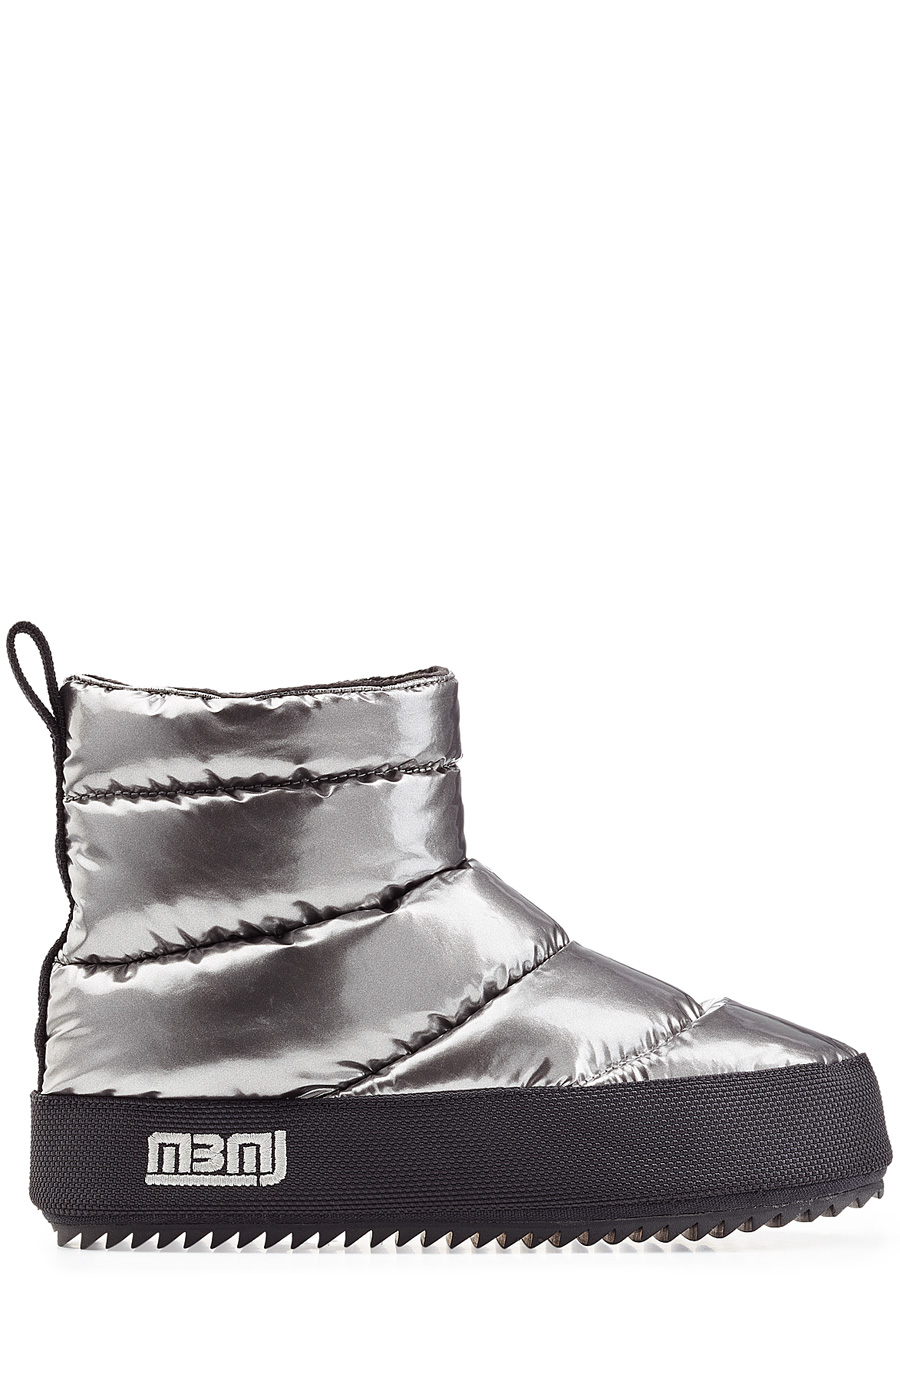 marc jacobs boots sale